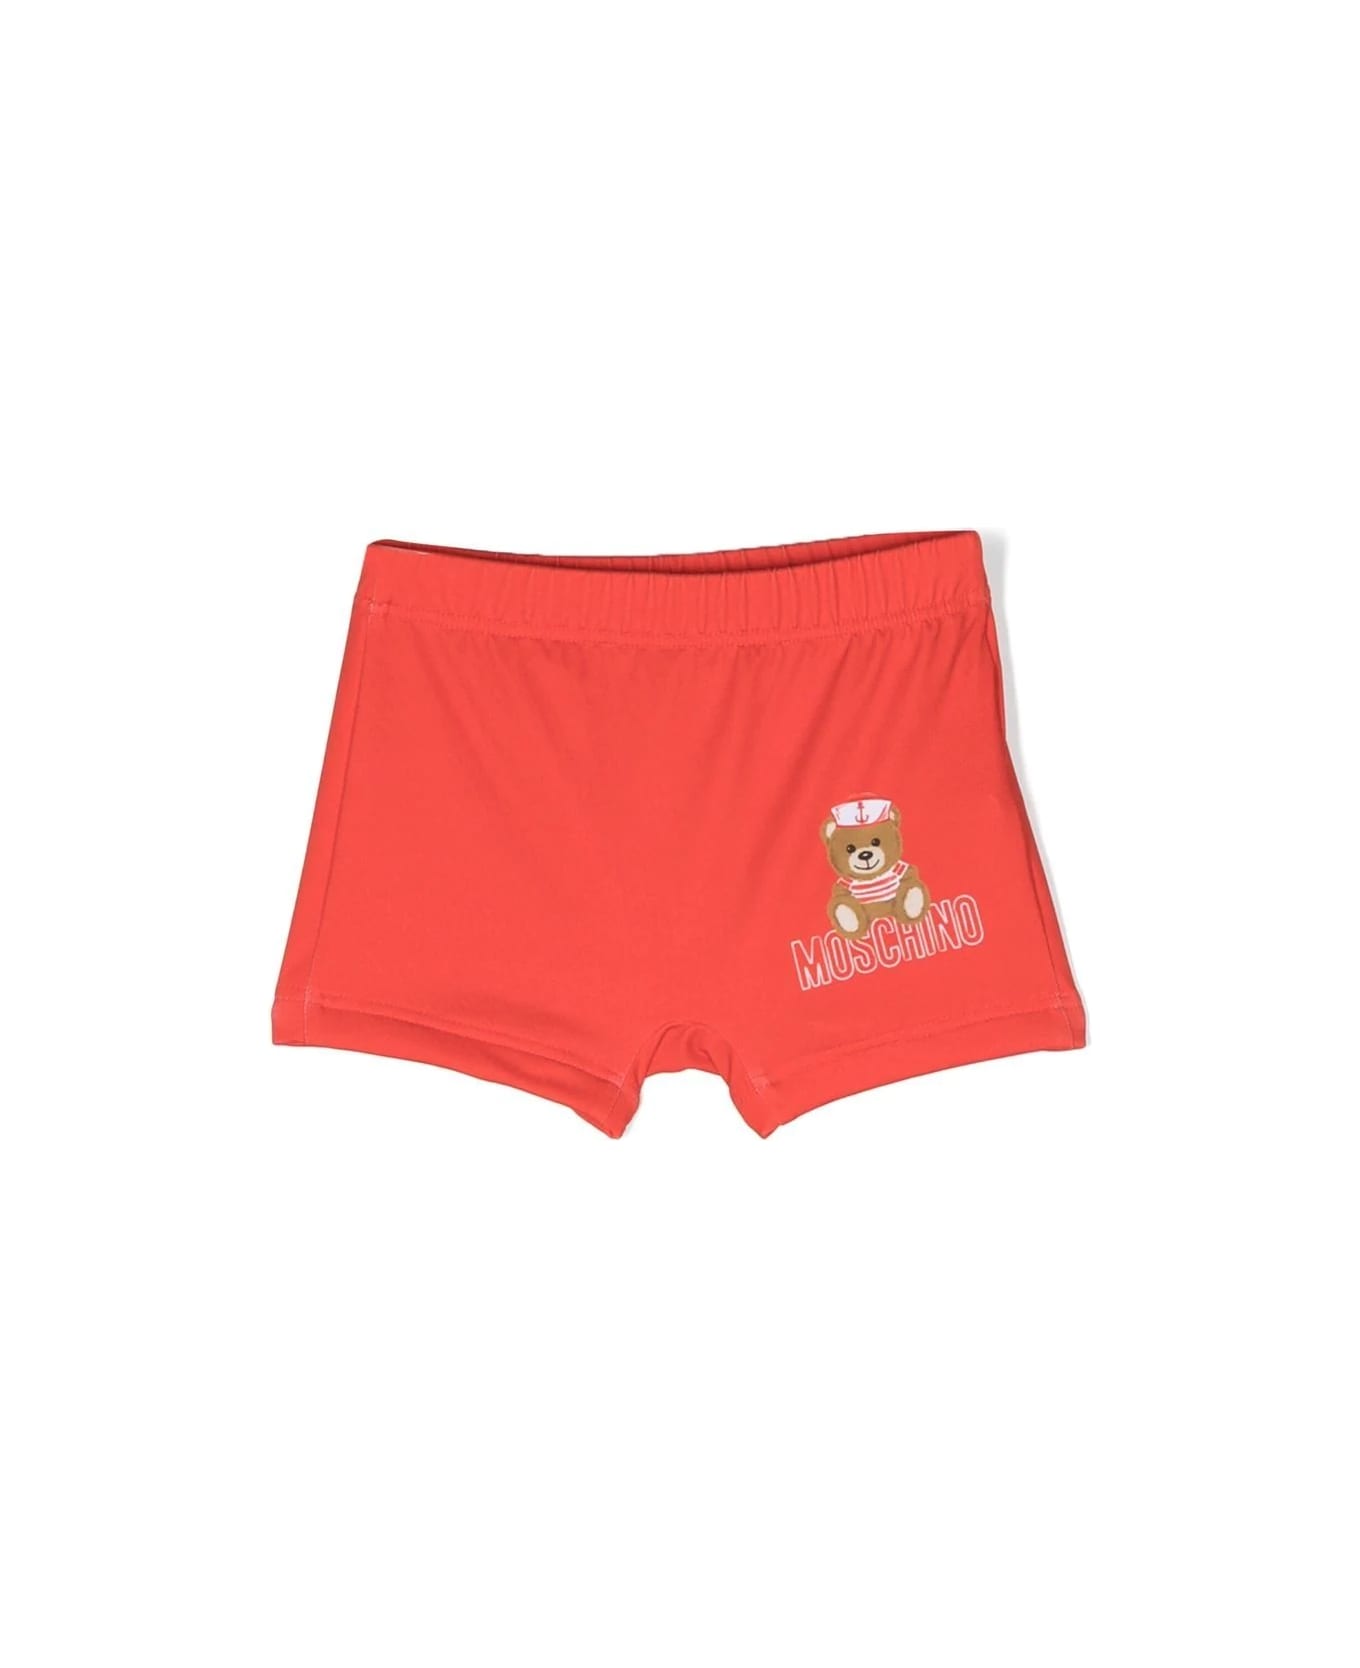 Moschino Logo Print Swim Shorts - Red